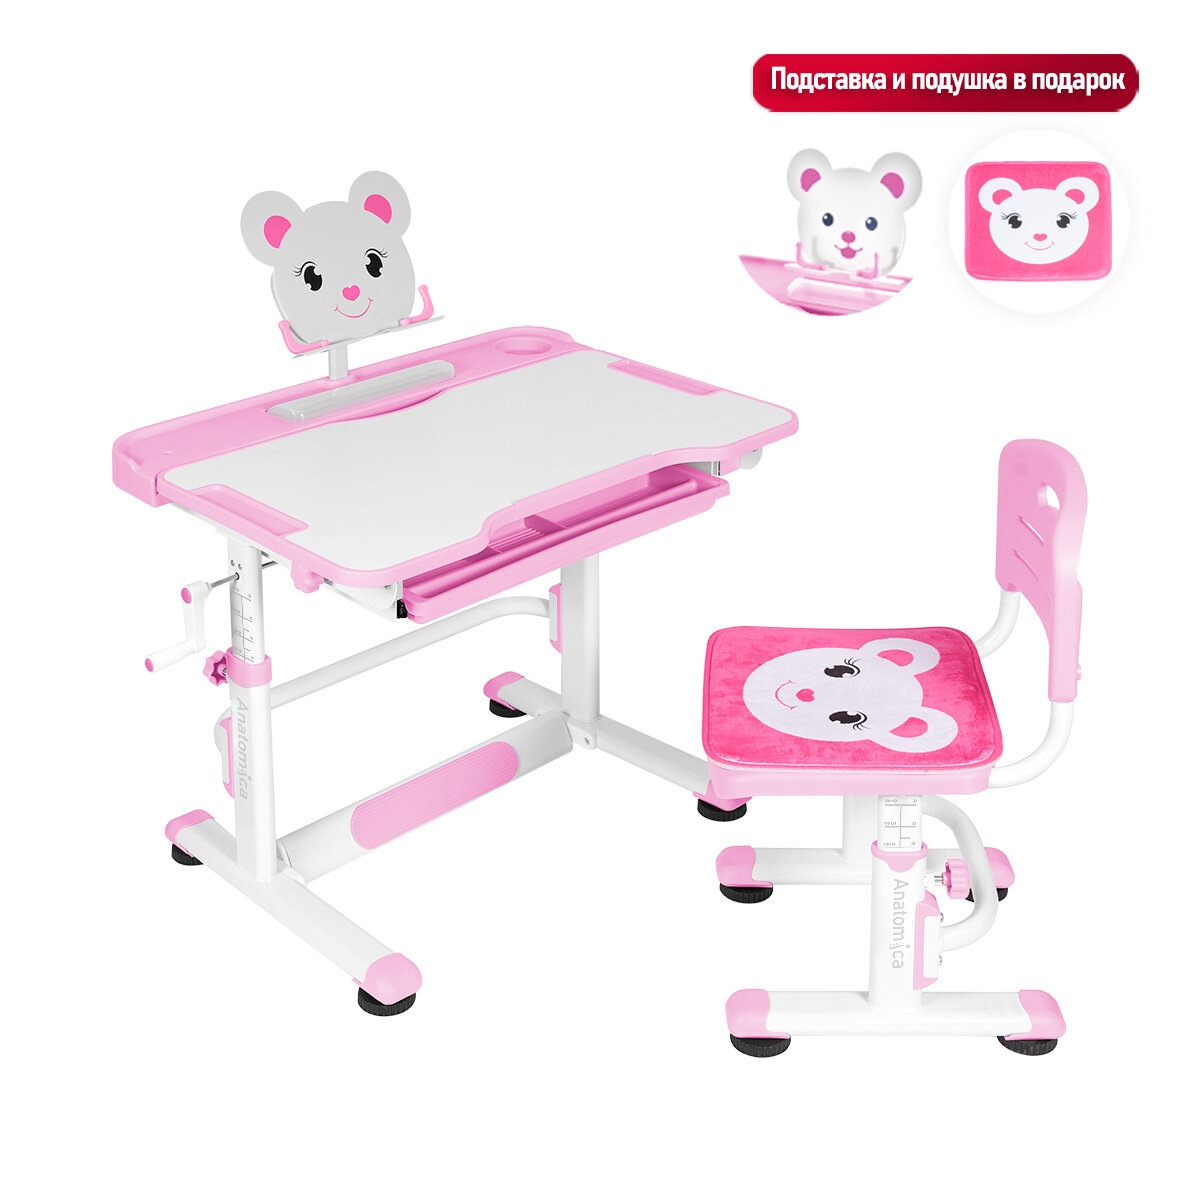 Комплект Anatomica Litra парта + стул + выдвижной ящик + подставка белый/розовый